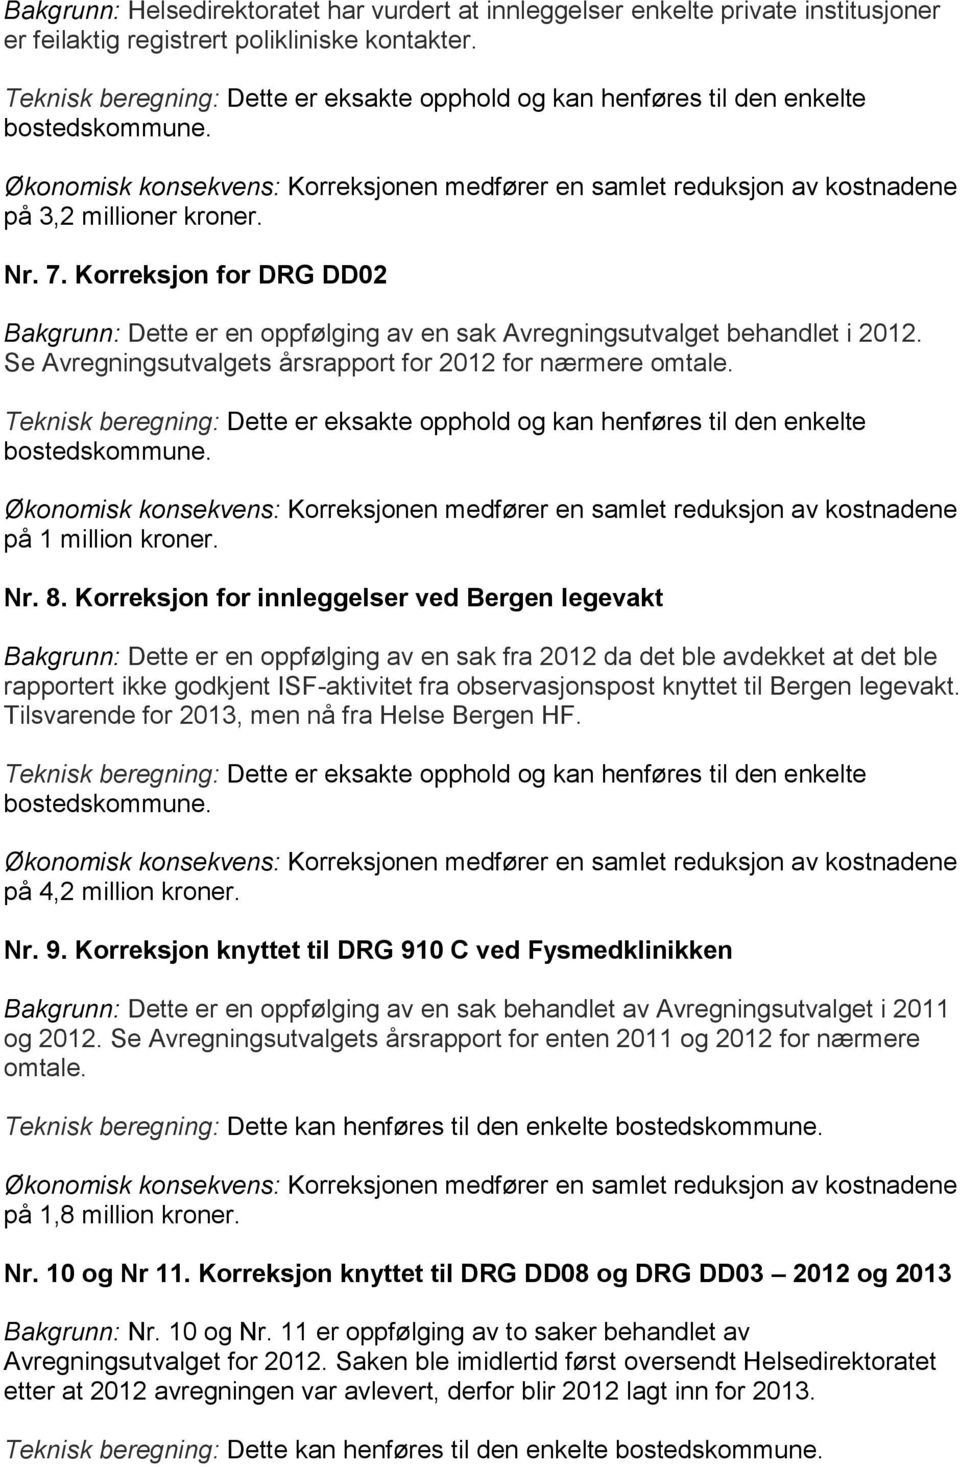 Korreksjon for innleggelser ved Bergen legevakt Bakgrunn: Dette er en oppfølging av en sak fra 2012 da det ble avdekket at det ble rapportert ikke godkjent ISF-aktivitet fra observasjonspost knyttet